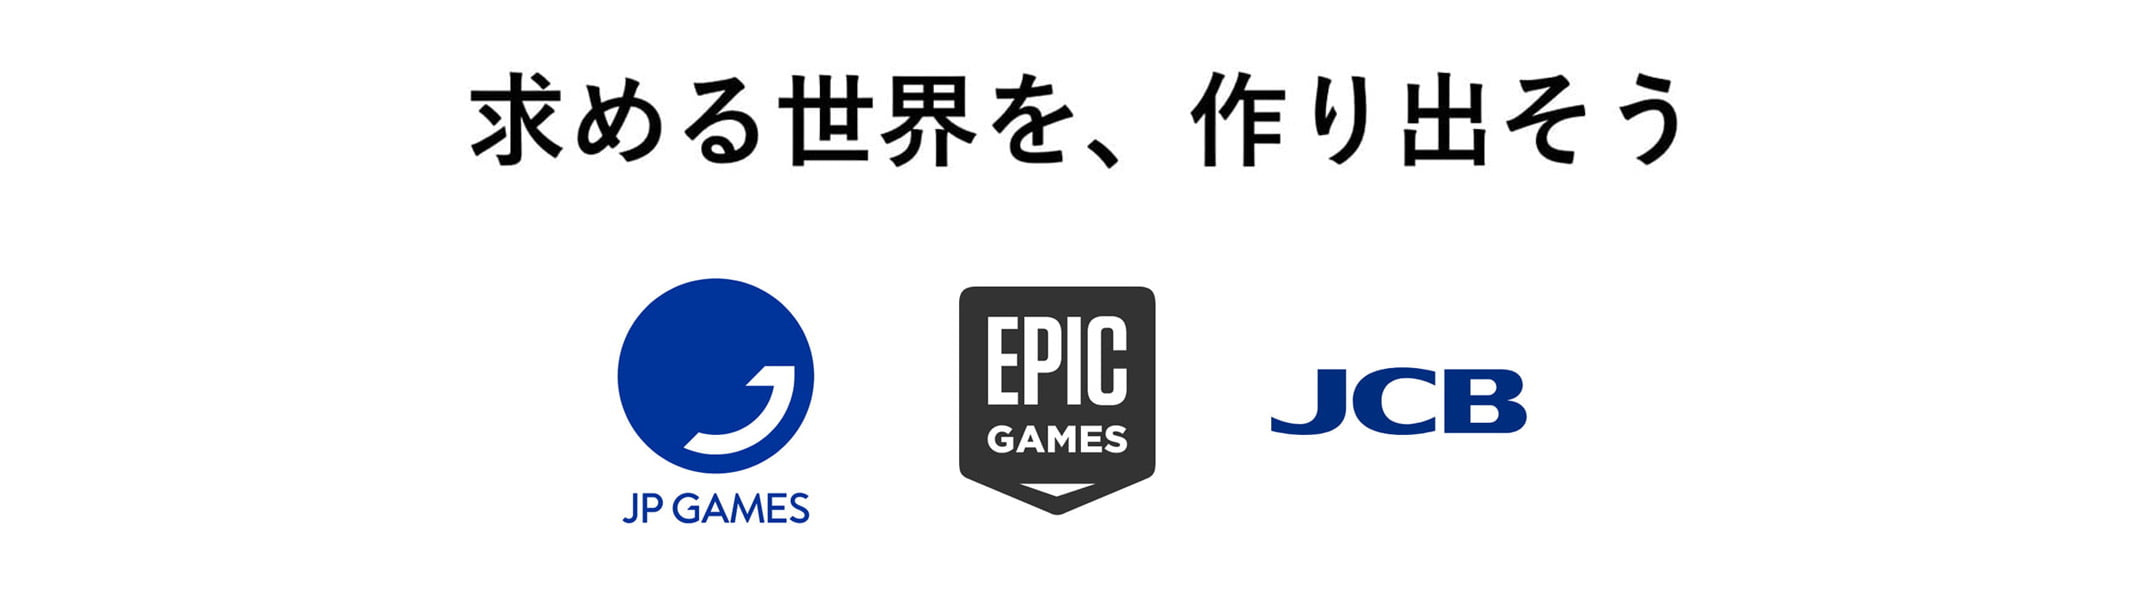 メタバース/RPG制作ミドルウェア「PEGASUS WORLD KIT」 EPIC GAMESのUnreal Engineを活用し、企業向けに提供中